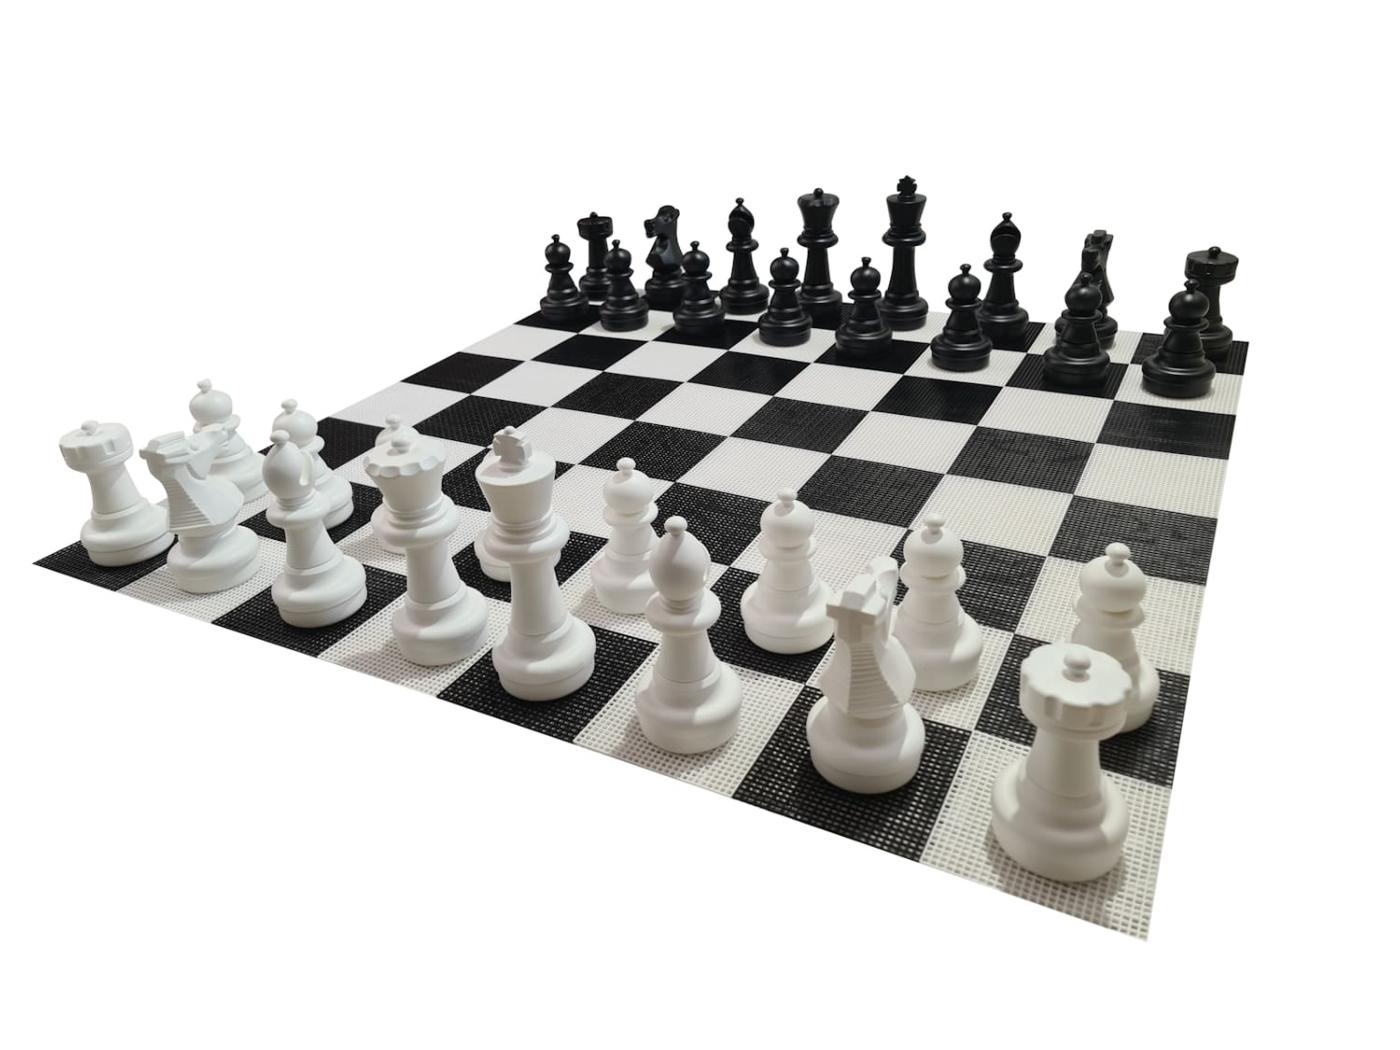 Juego de ajedrez gigante con tablero rígido gigante incluido juego completo sobre tablero vista 2